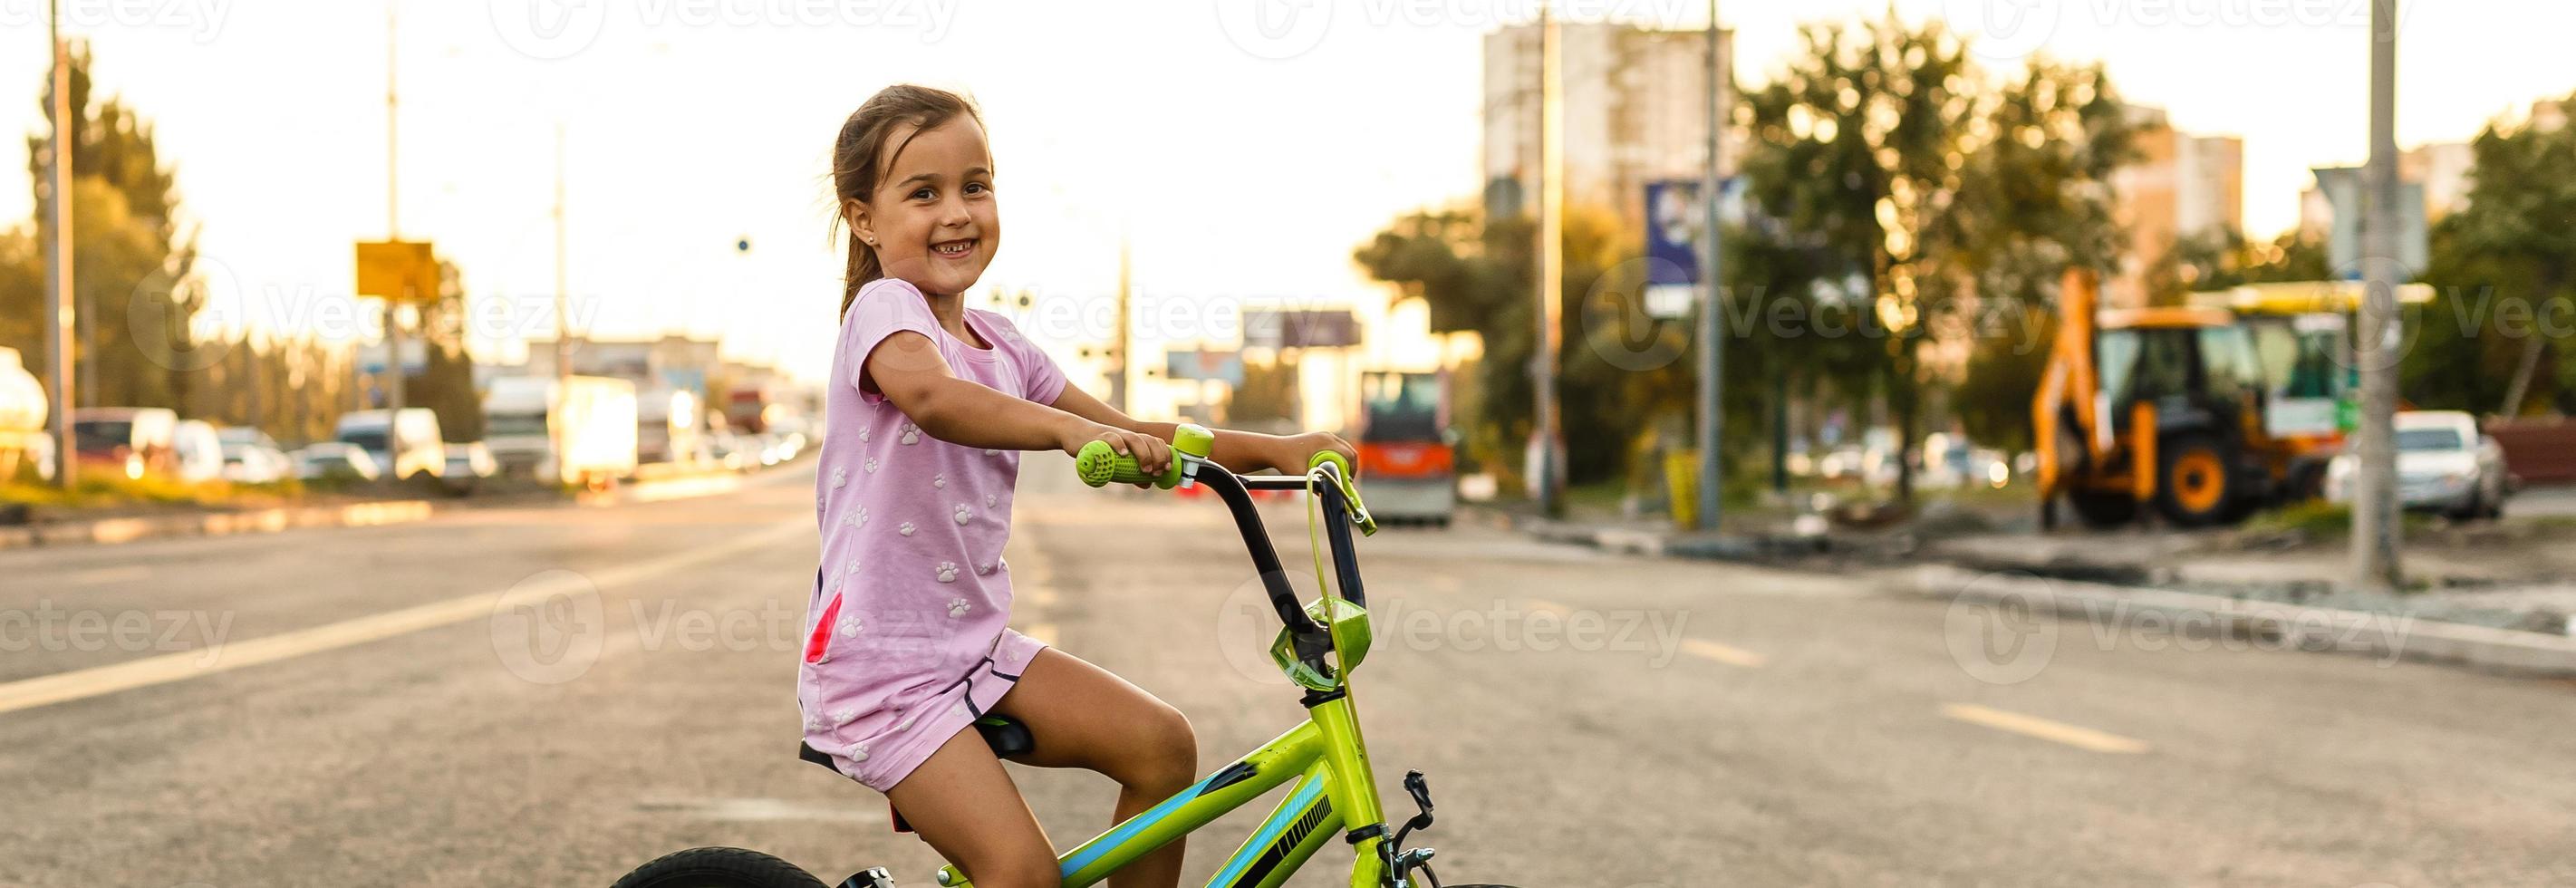 barn inlärning till kör en cykel på en uppfart utanför. liten flickor ridning Cyklar på asfalt väg i de stad bär hjälmar som skyddande redskap. foto